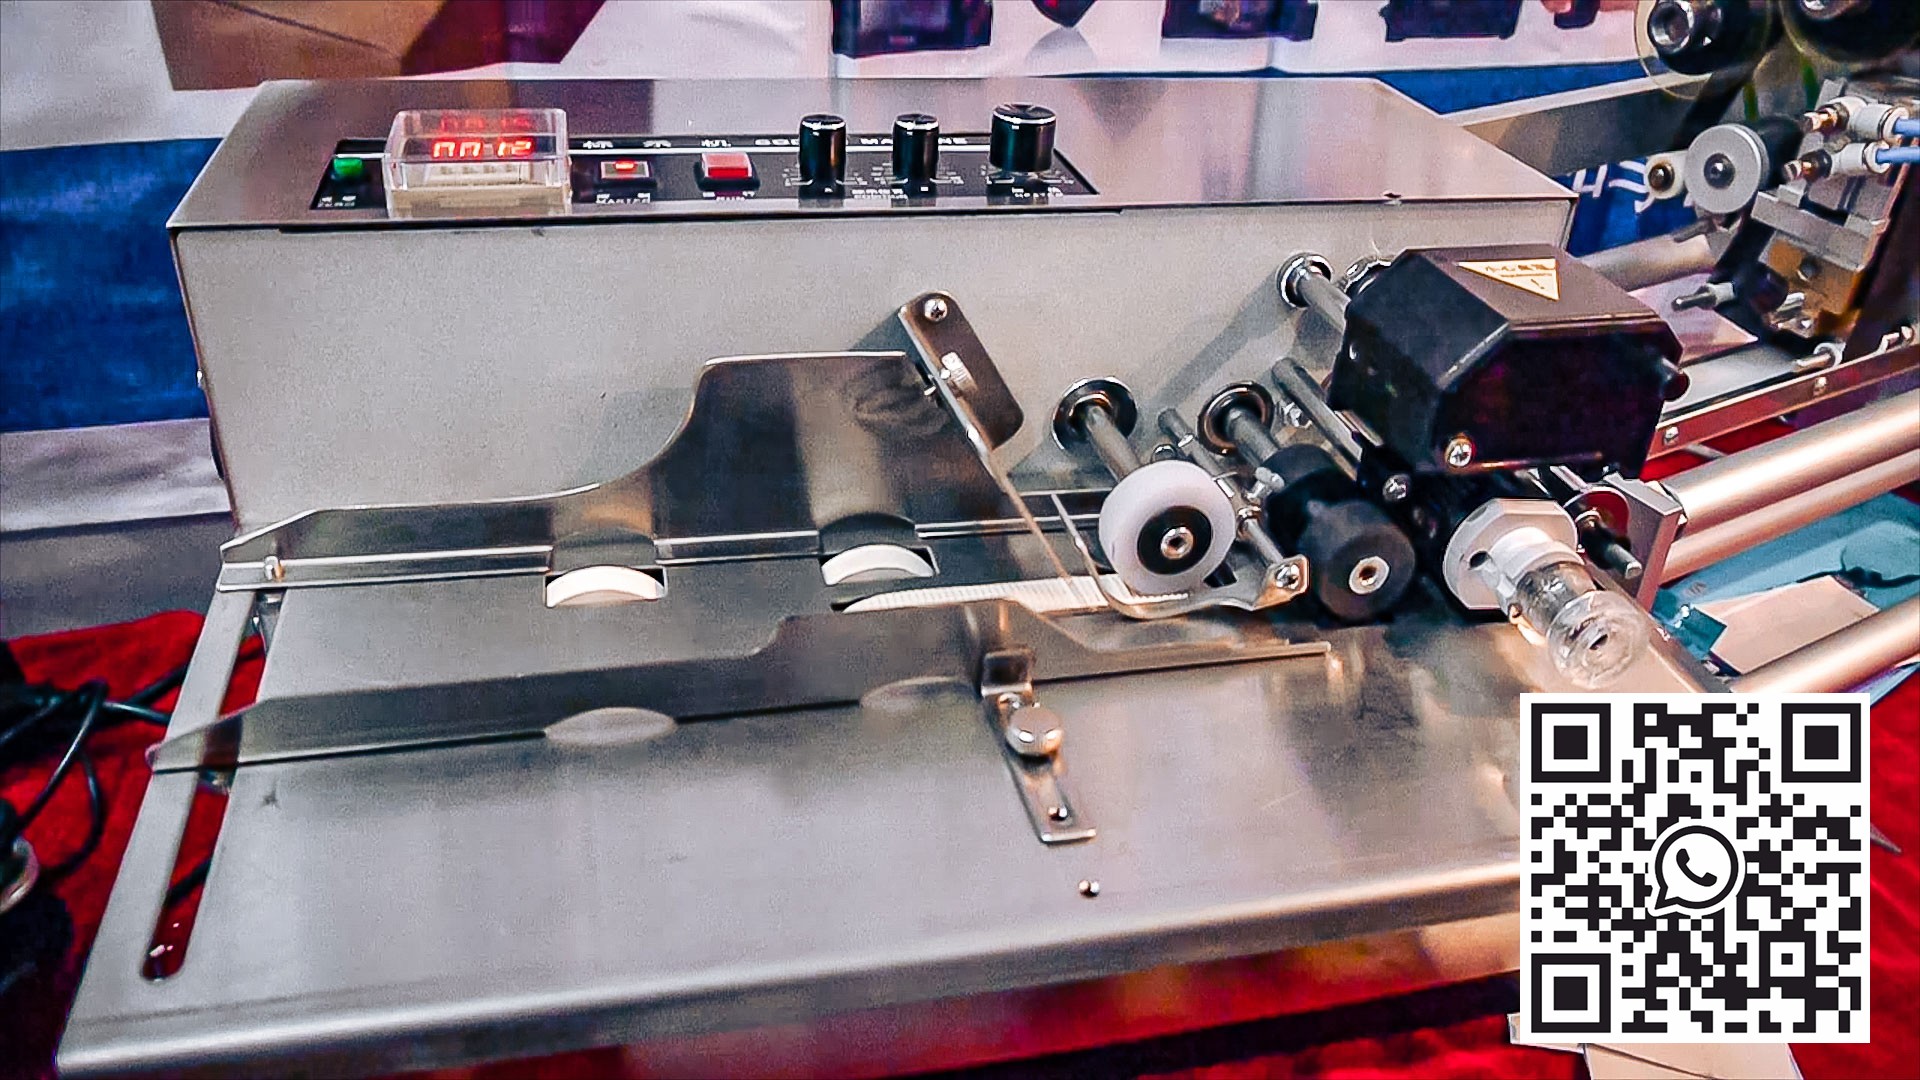 Equipo automático para imprimir la vida útil en materiales en rollo